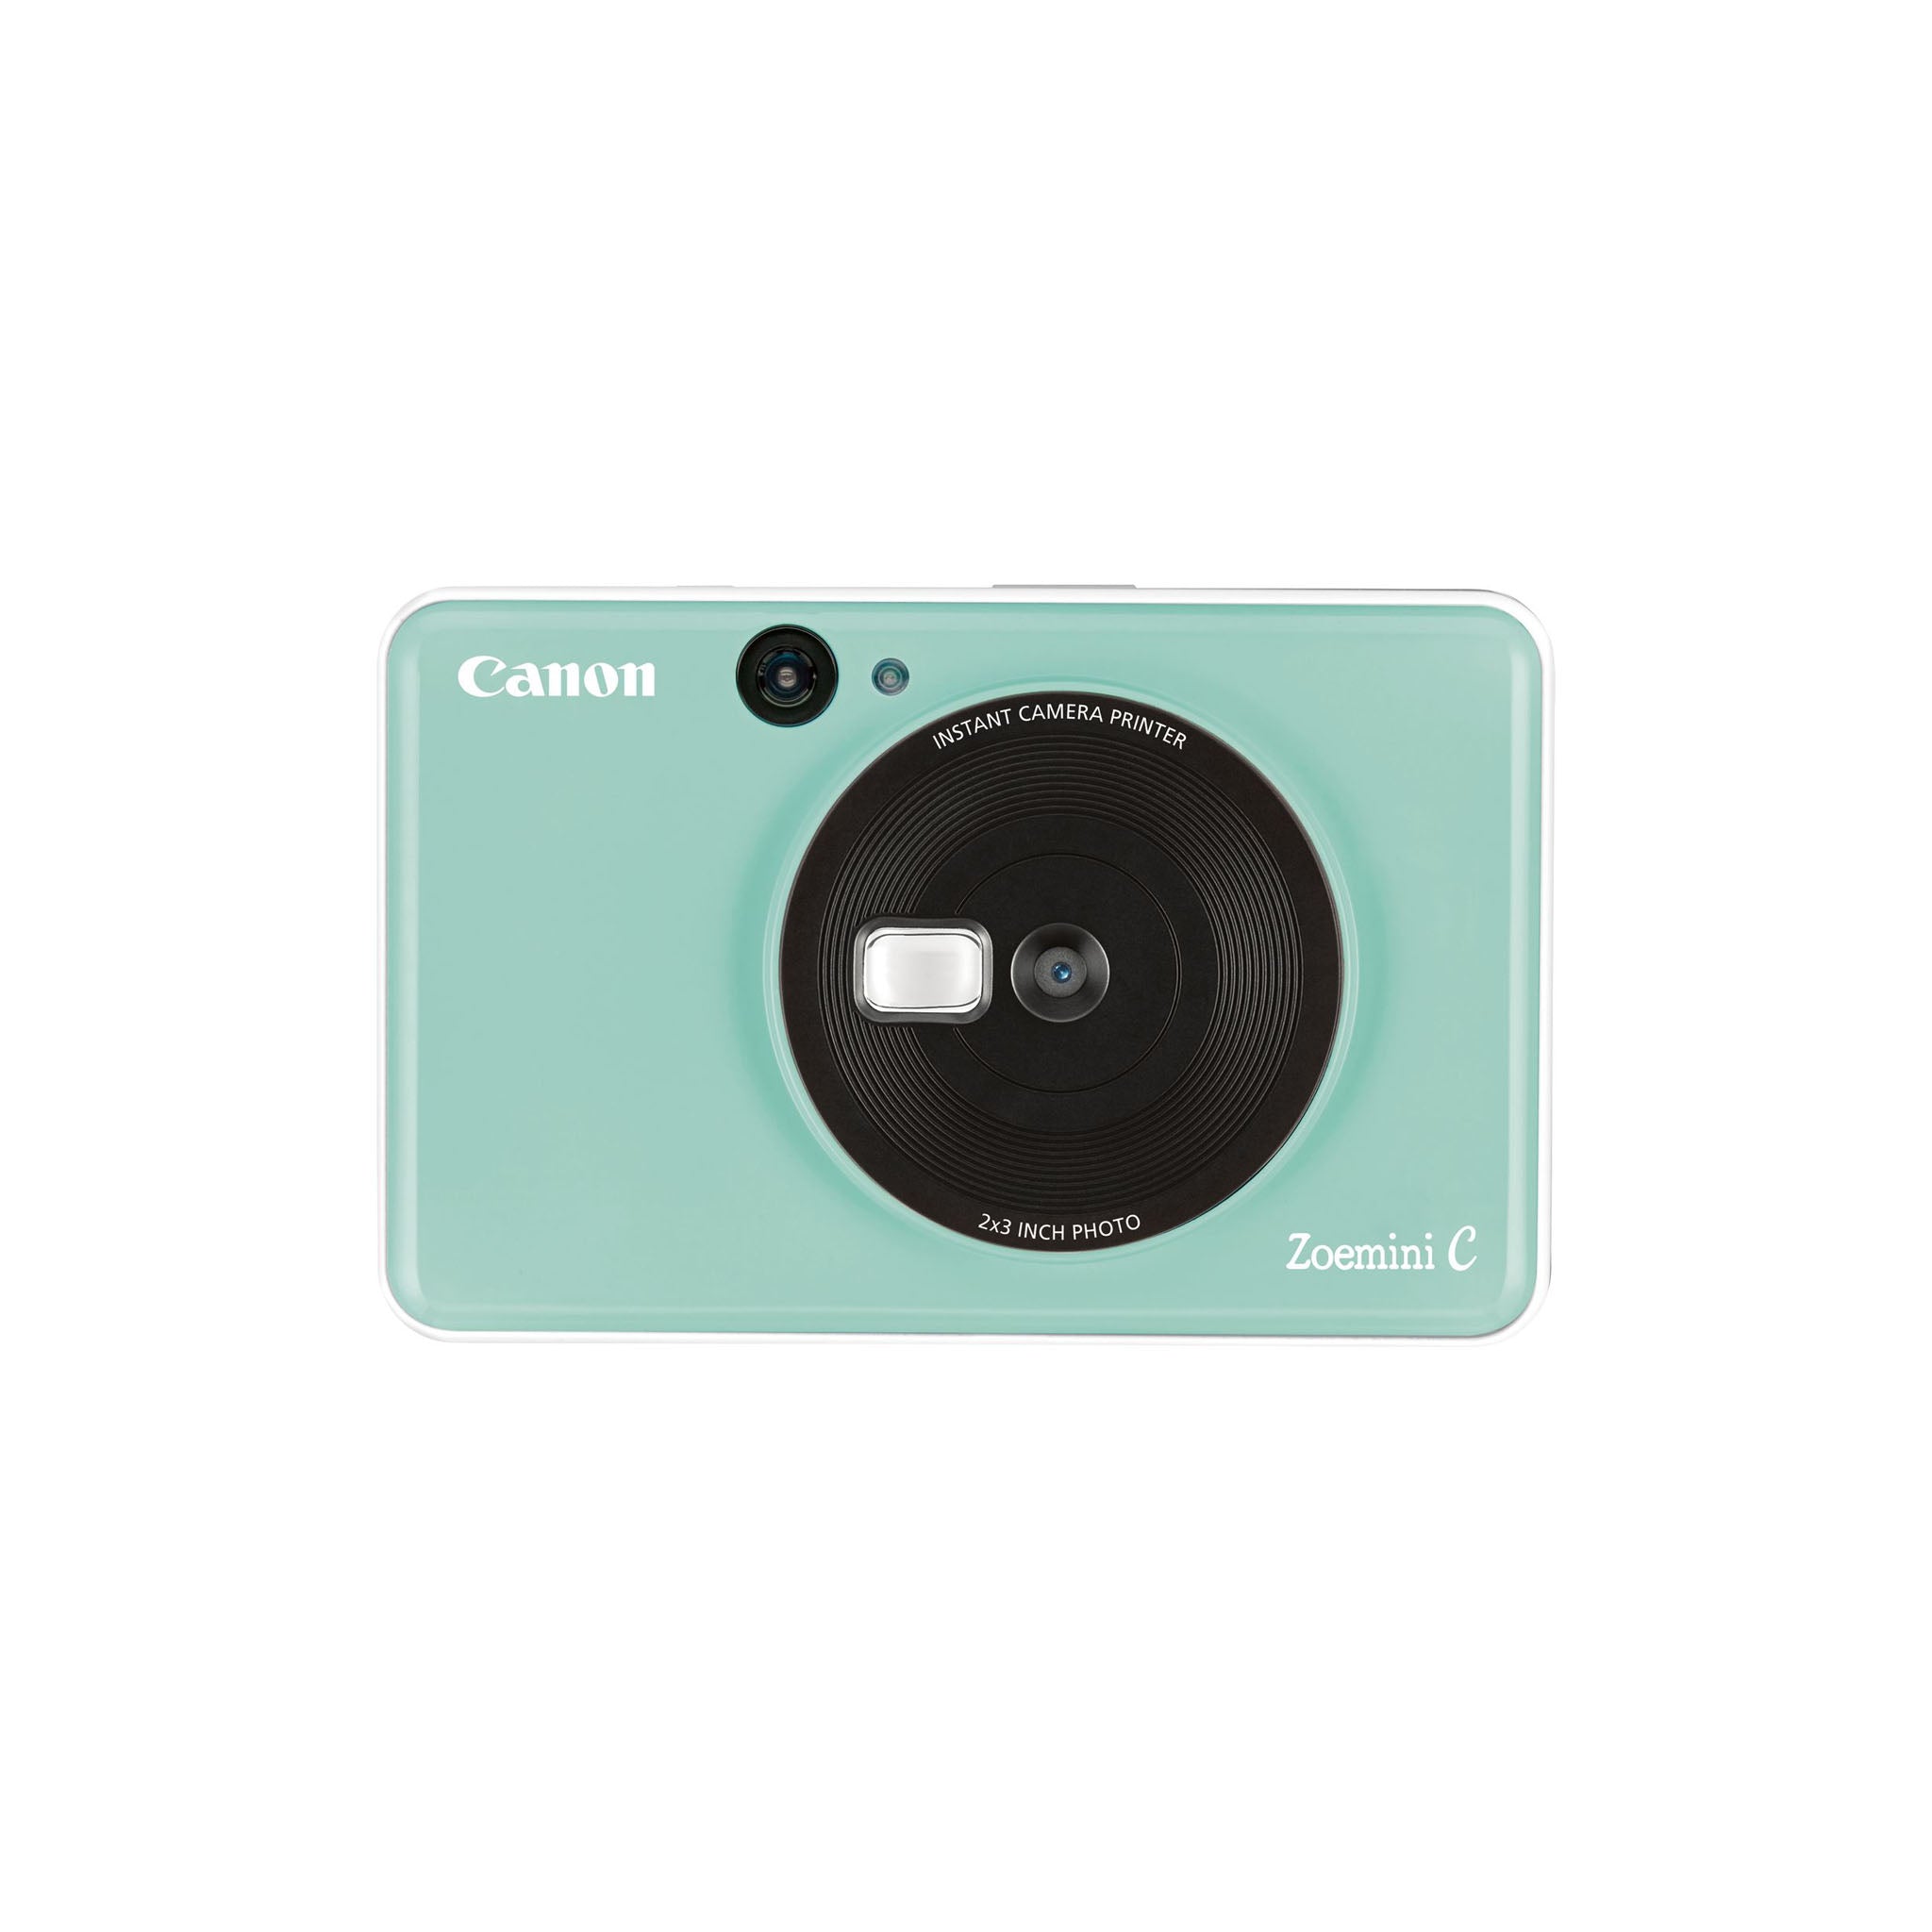 Canon Zoemini C Instant Camera + Printer